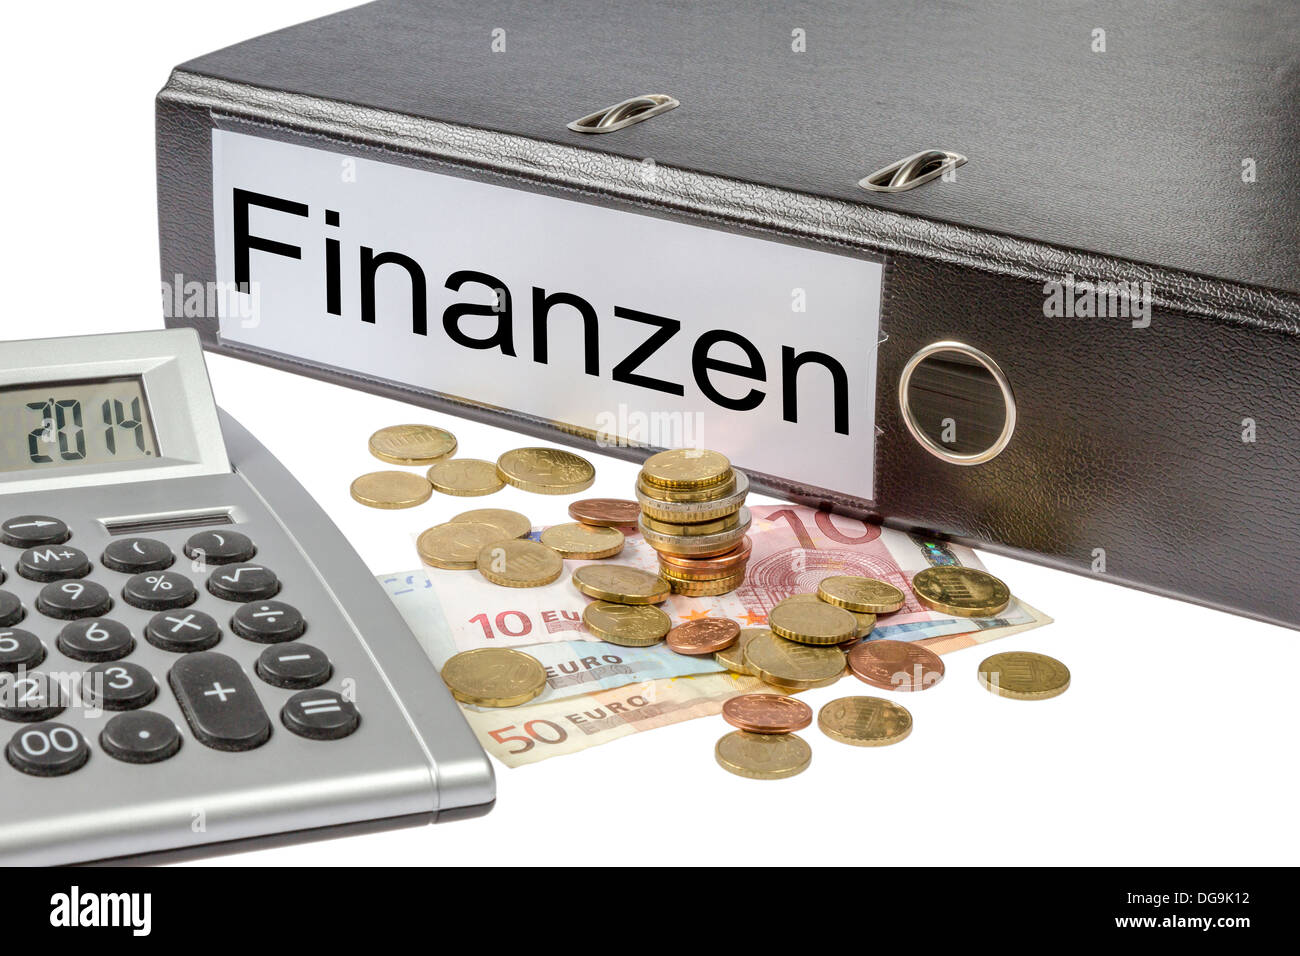 Un classeur étiqueté d'esprit, le mot allemand Finanzen (Finances) calculatrice et monnaie européenne isolé sur fond blanc Banque D'Images